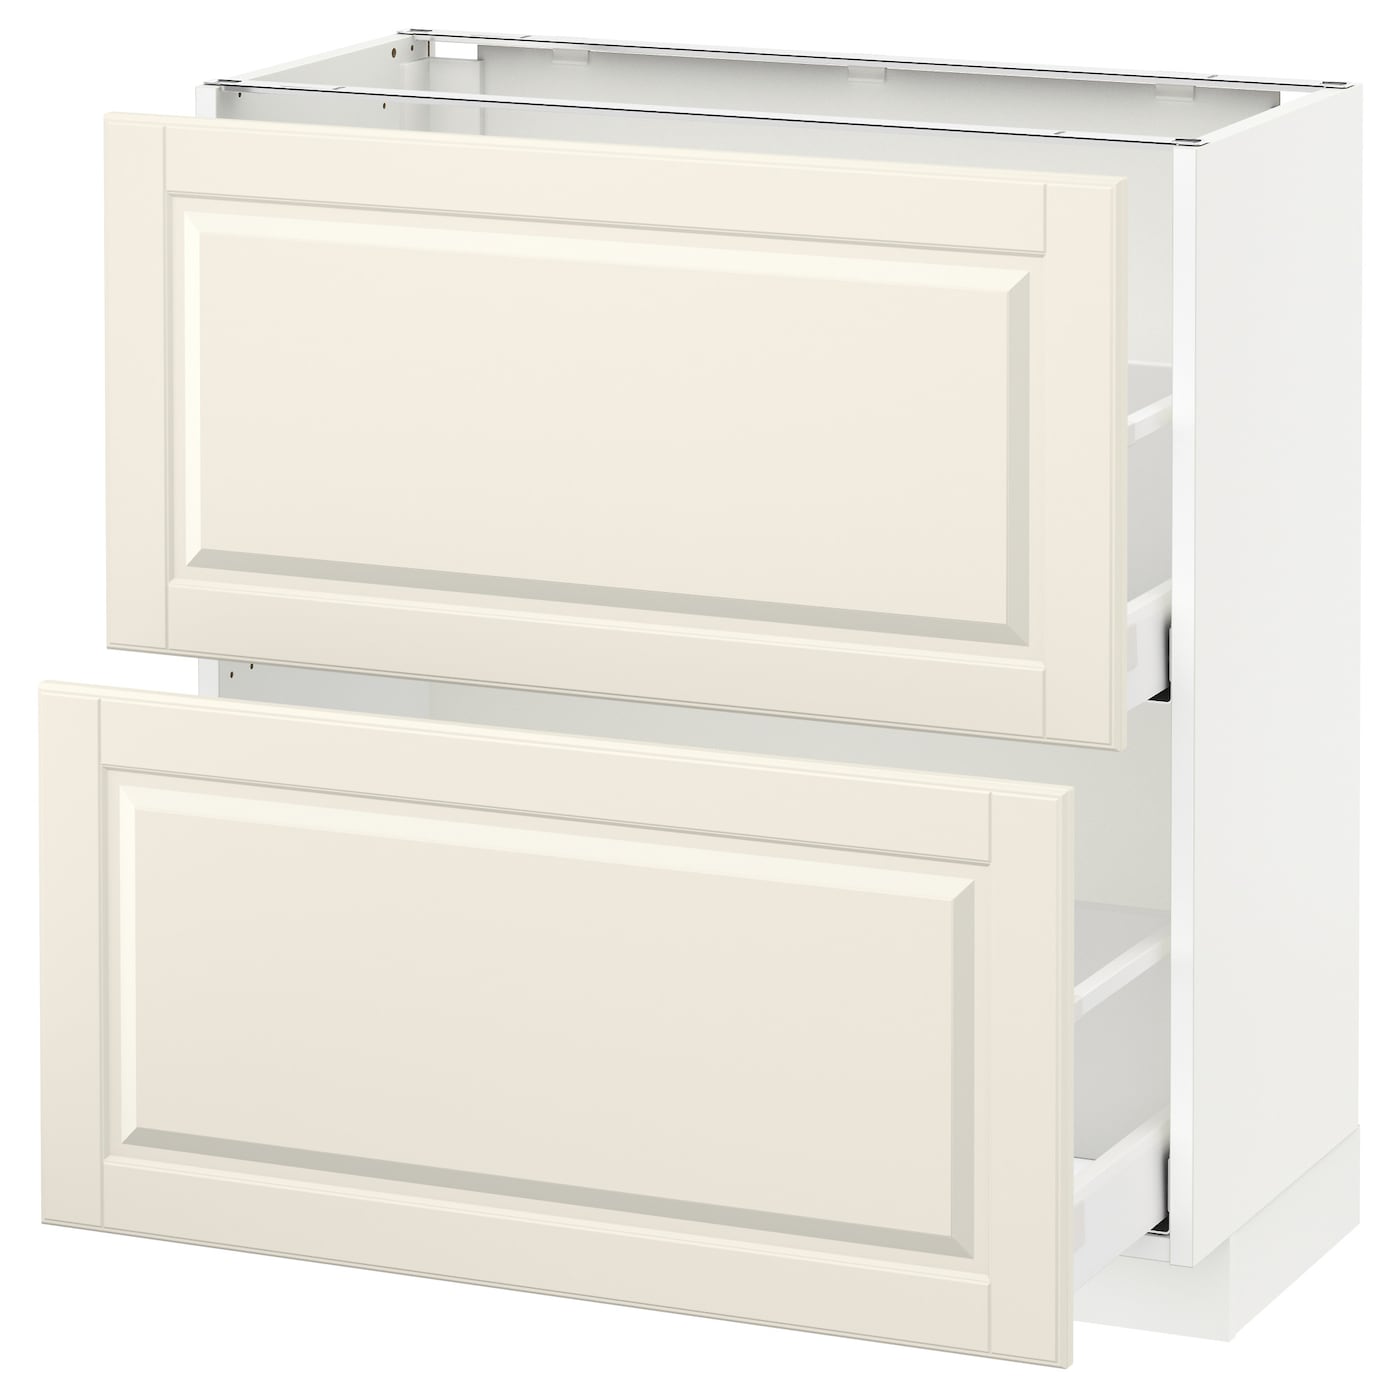 Напольный кухонный шкаф  - IKEA METOD MAXIMERA, 88x39,5x80см, белый/светло-бежевый, МЕТОД МАКСИМЕРА ИКЕА